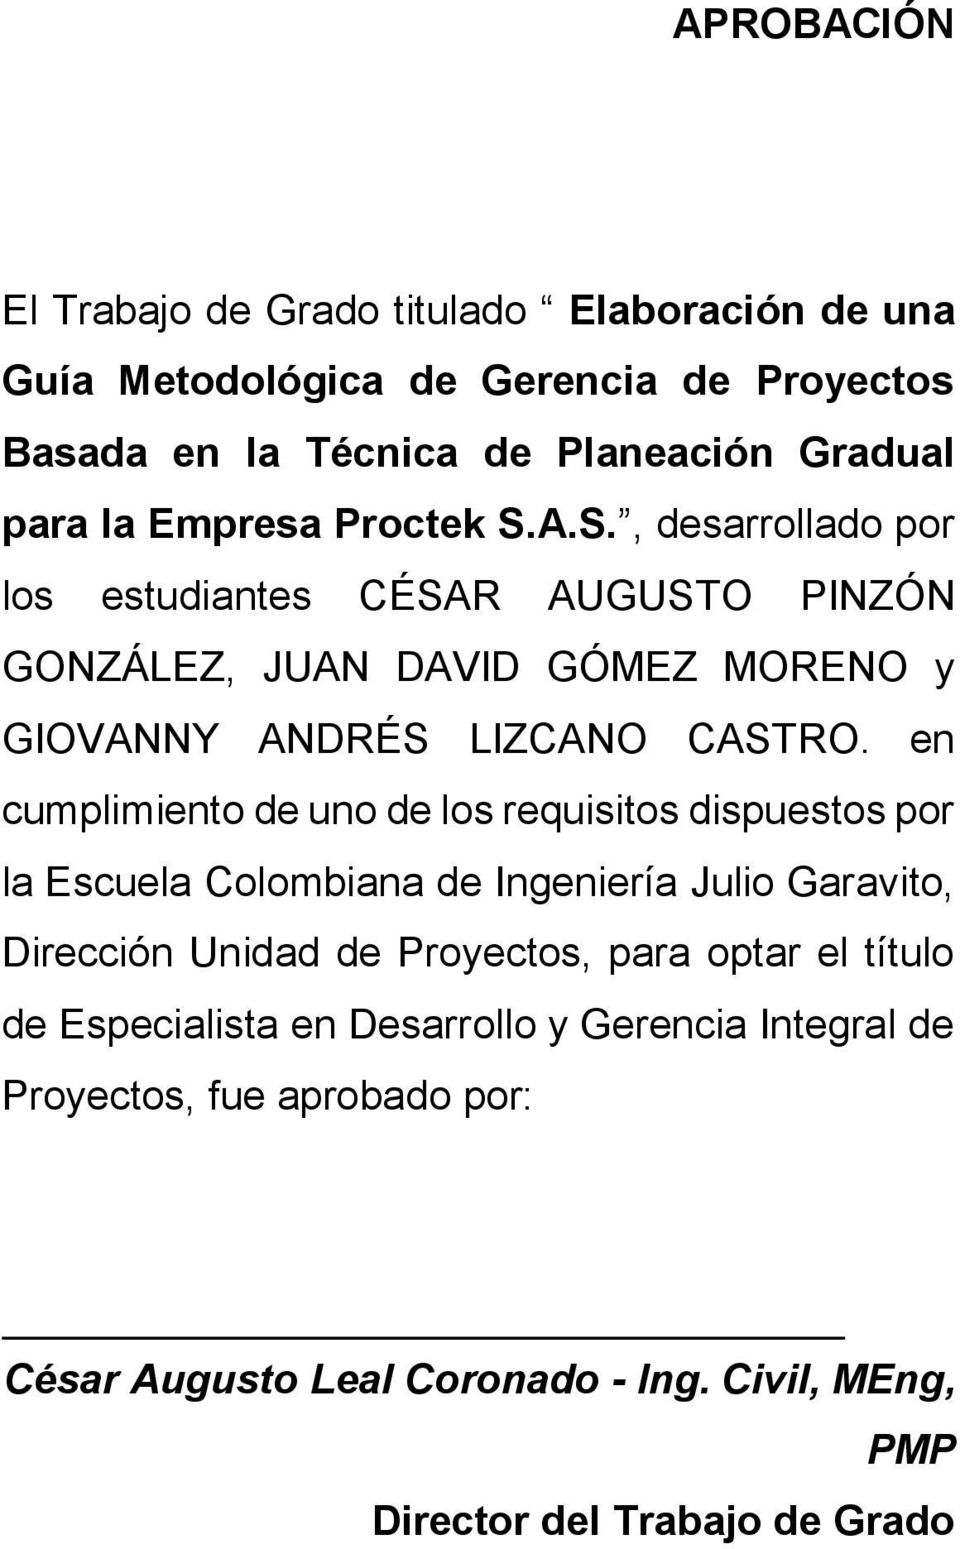 en cumplimiento de uno de los requisitos dispuestos por la Escuela Colombiana de Ingeniería Julio Garavito, Dirección Unidad de Proyectos, para optar el